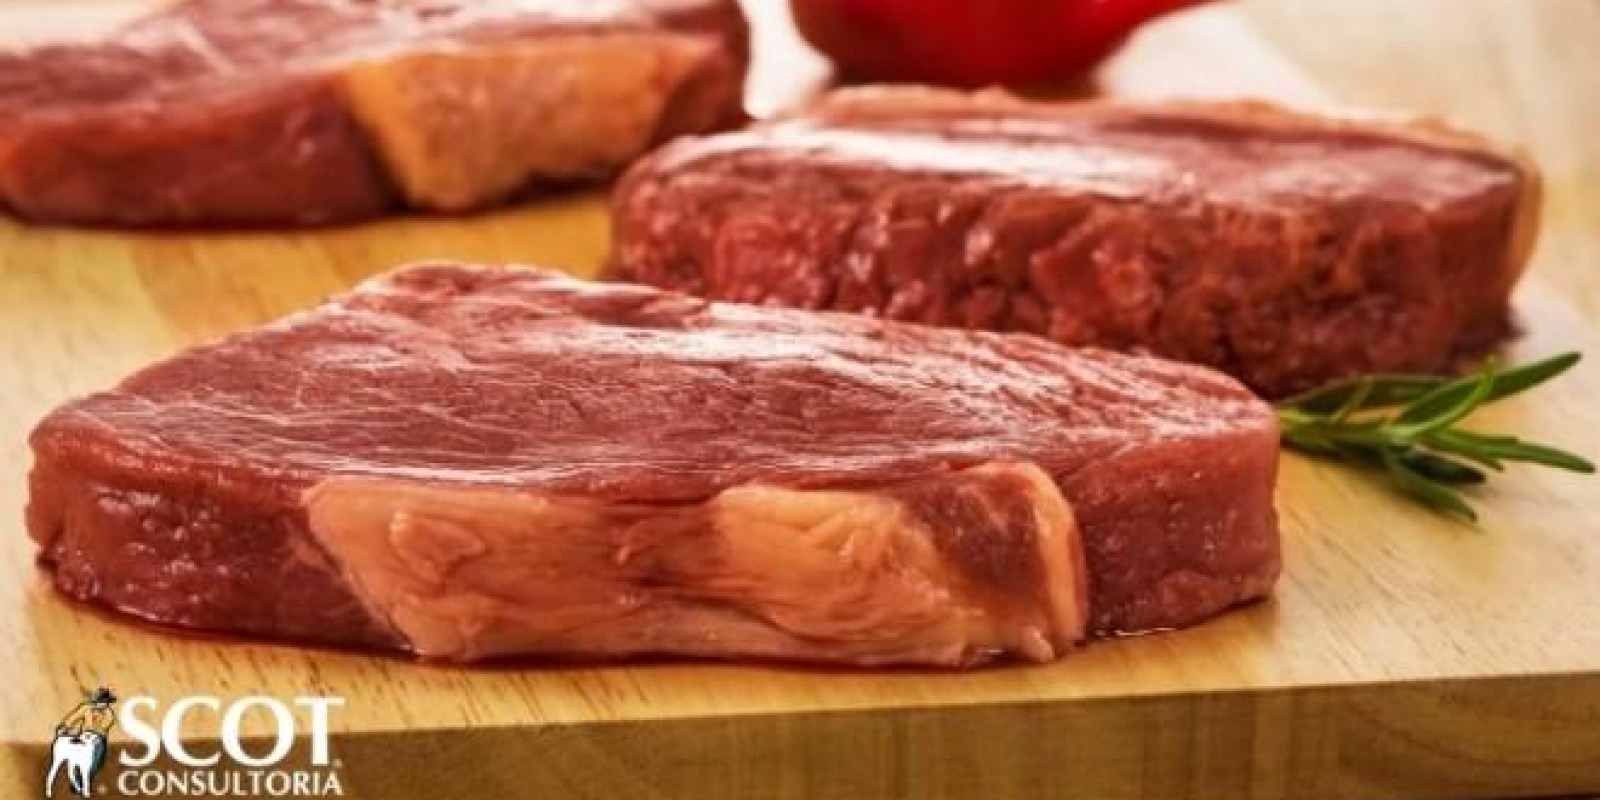 Carne bovina: queda nos preços no atacado com osso